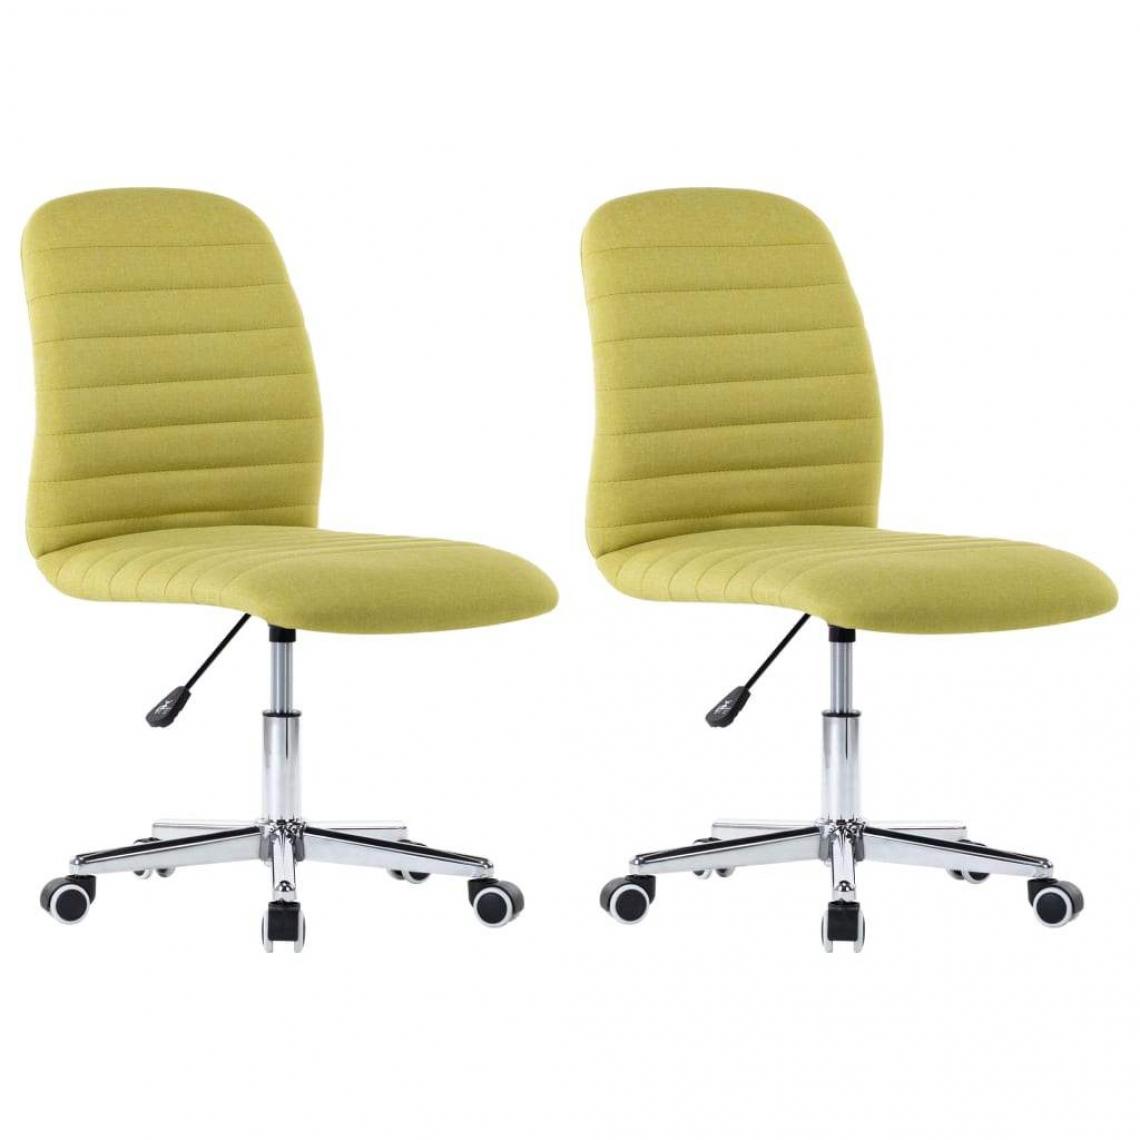 Decoshop26 - Lot de 2 chaises de salle à manger cuisine design moderne tissu vert CDS021122 - Chaises